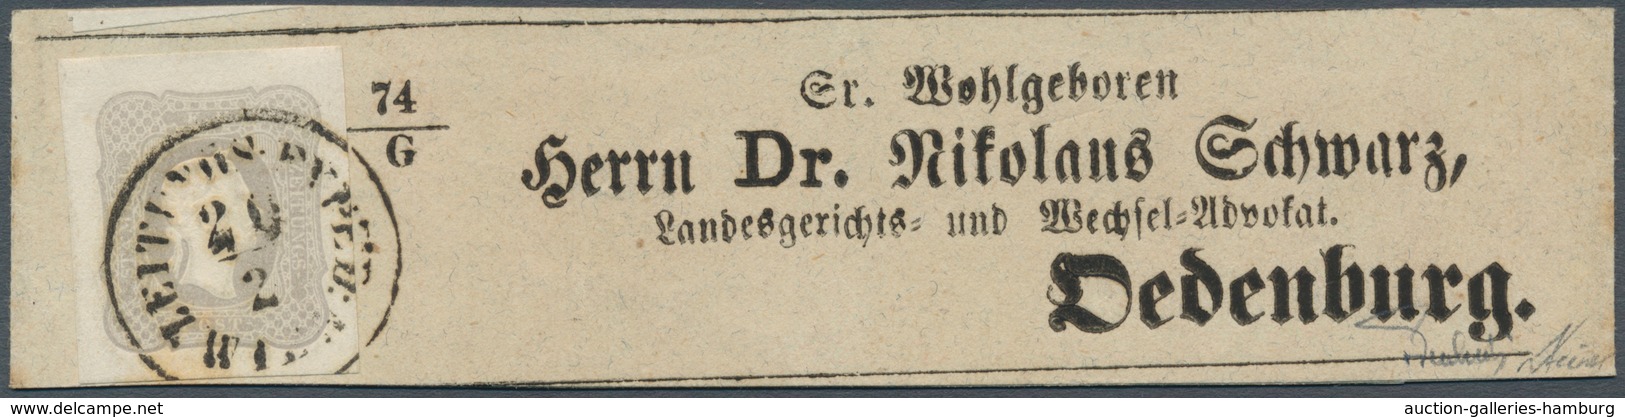 Österreich: 1861, (1,05 Kreuzer) Hellgrauviolett Zeitungsmarke, Allseits Breit- Bis überrandig, Entw - Unused Stamps